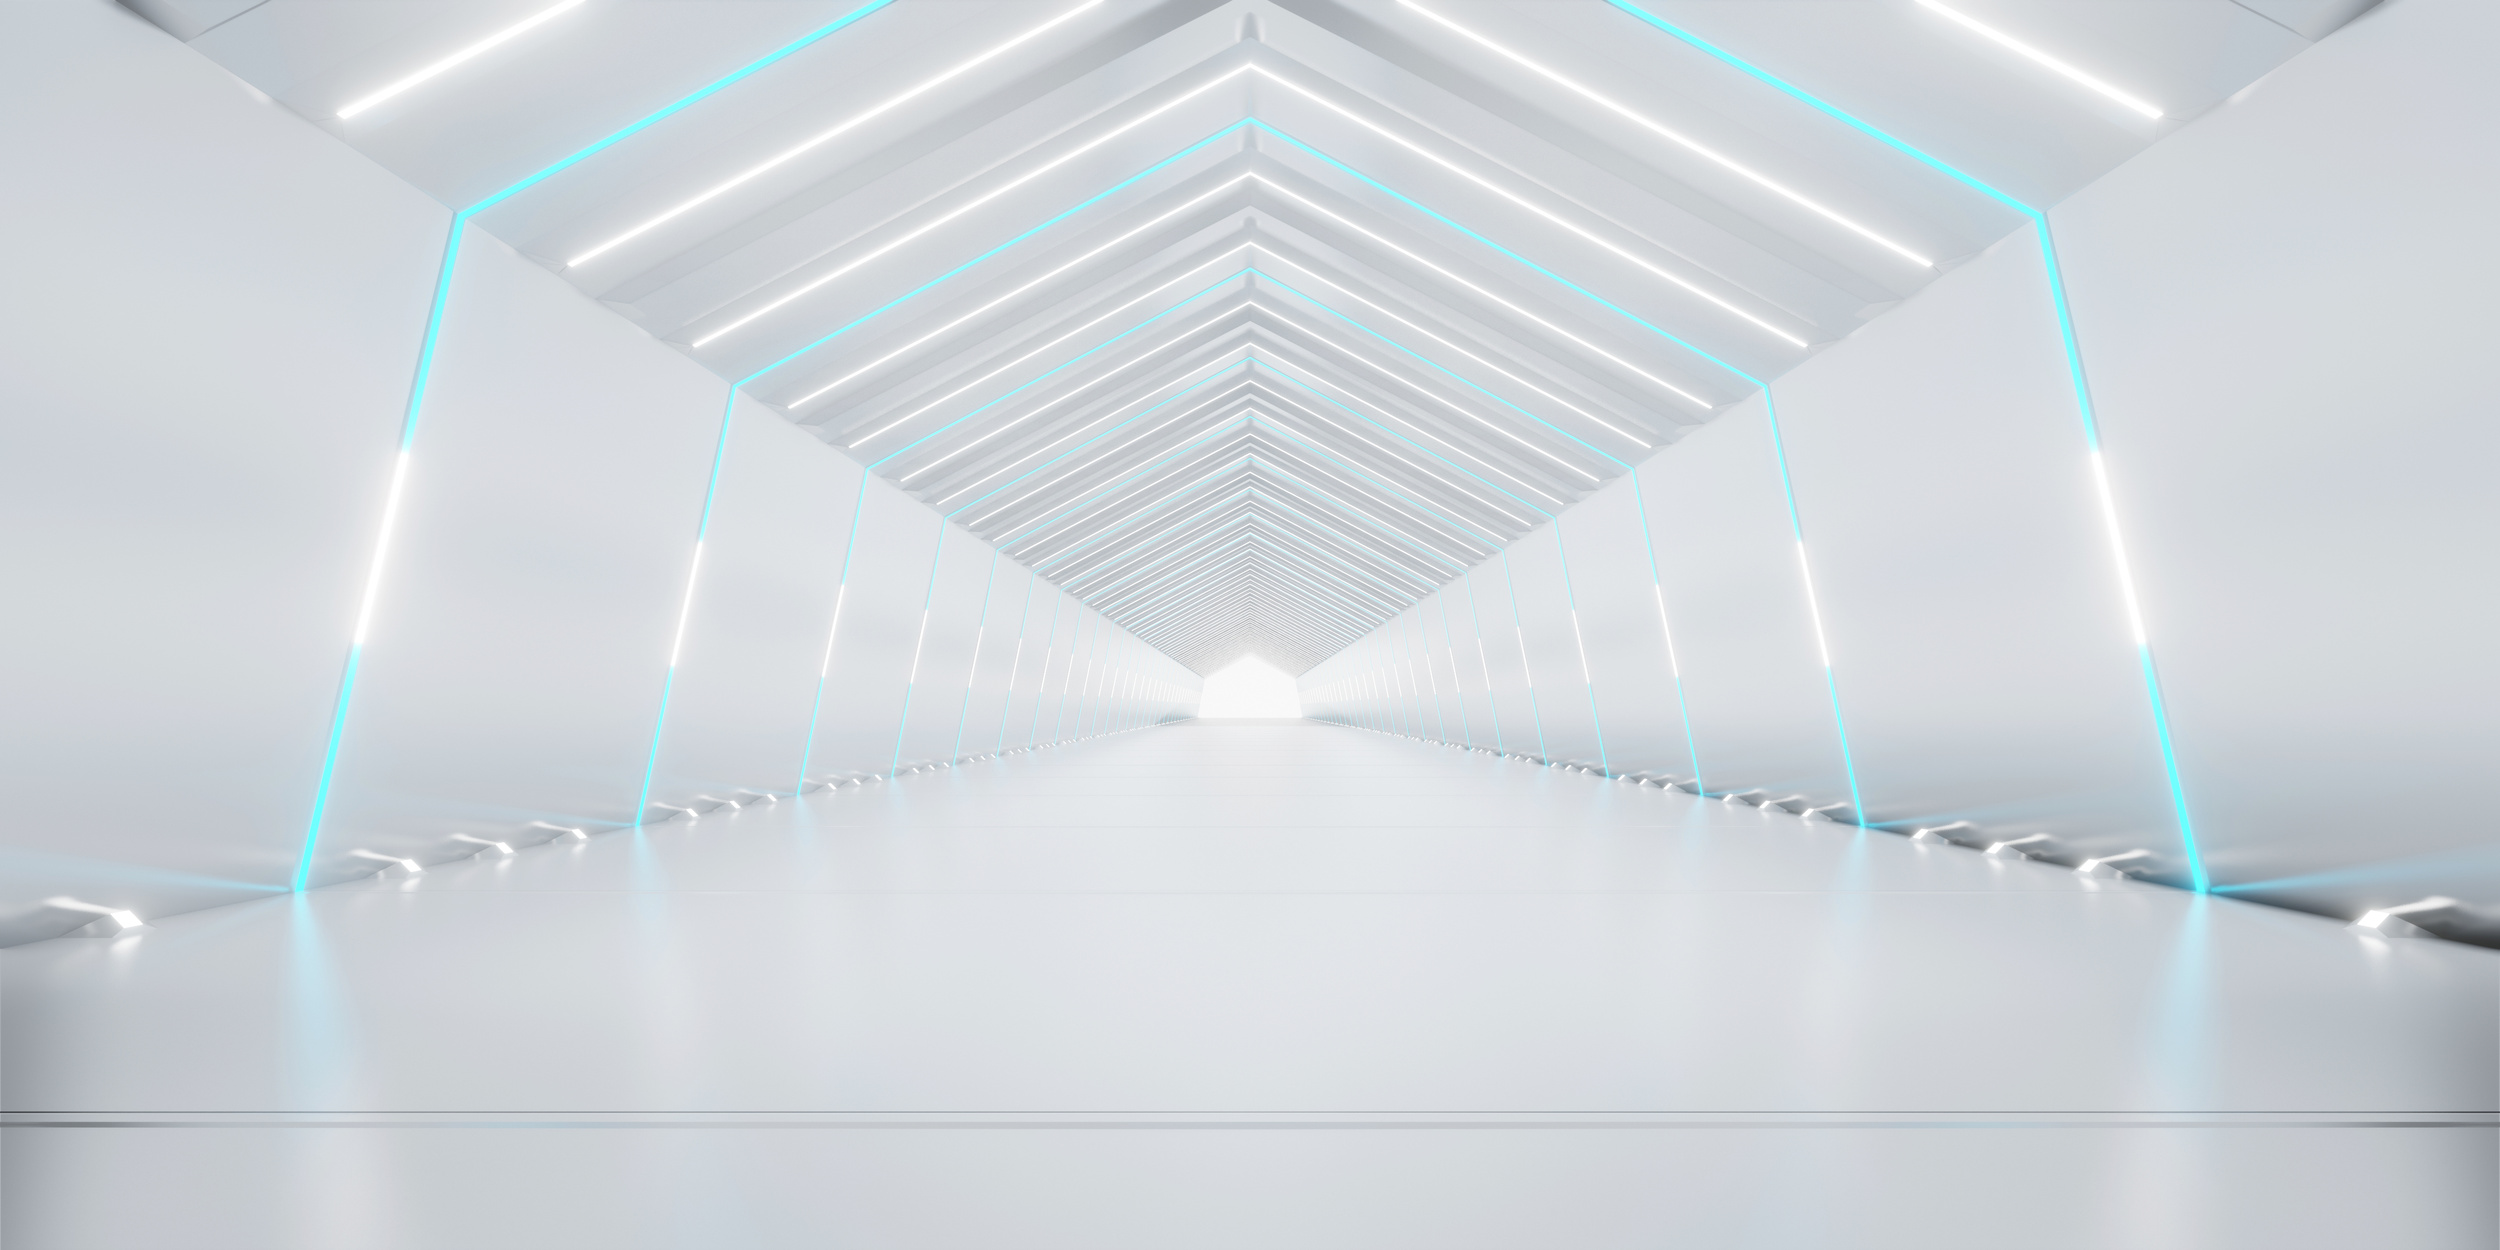 Abstract interior sci-fi spaceship corridors.